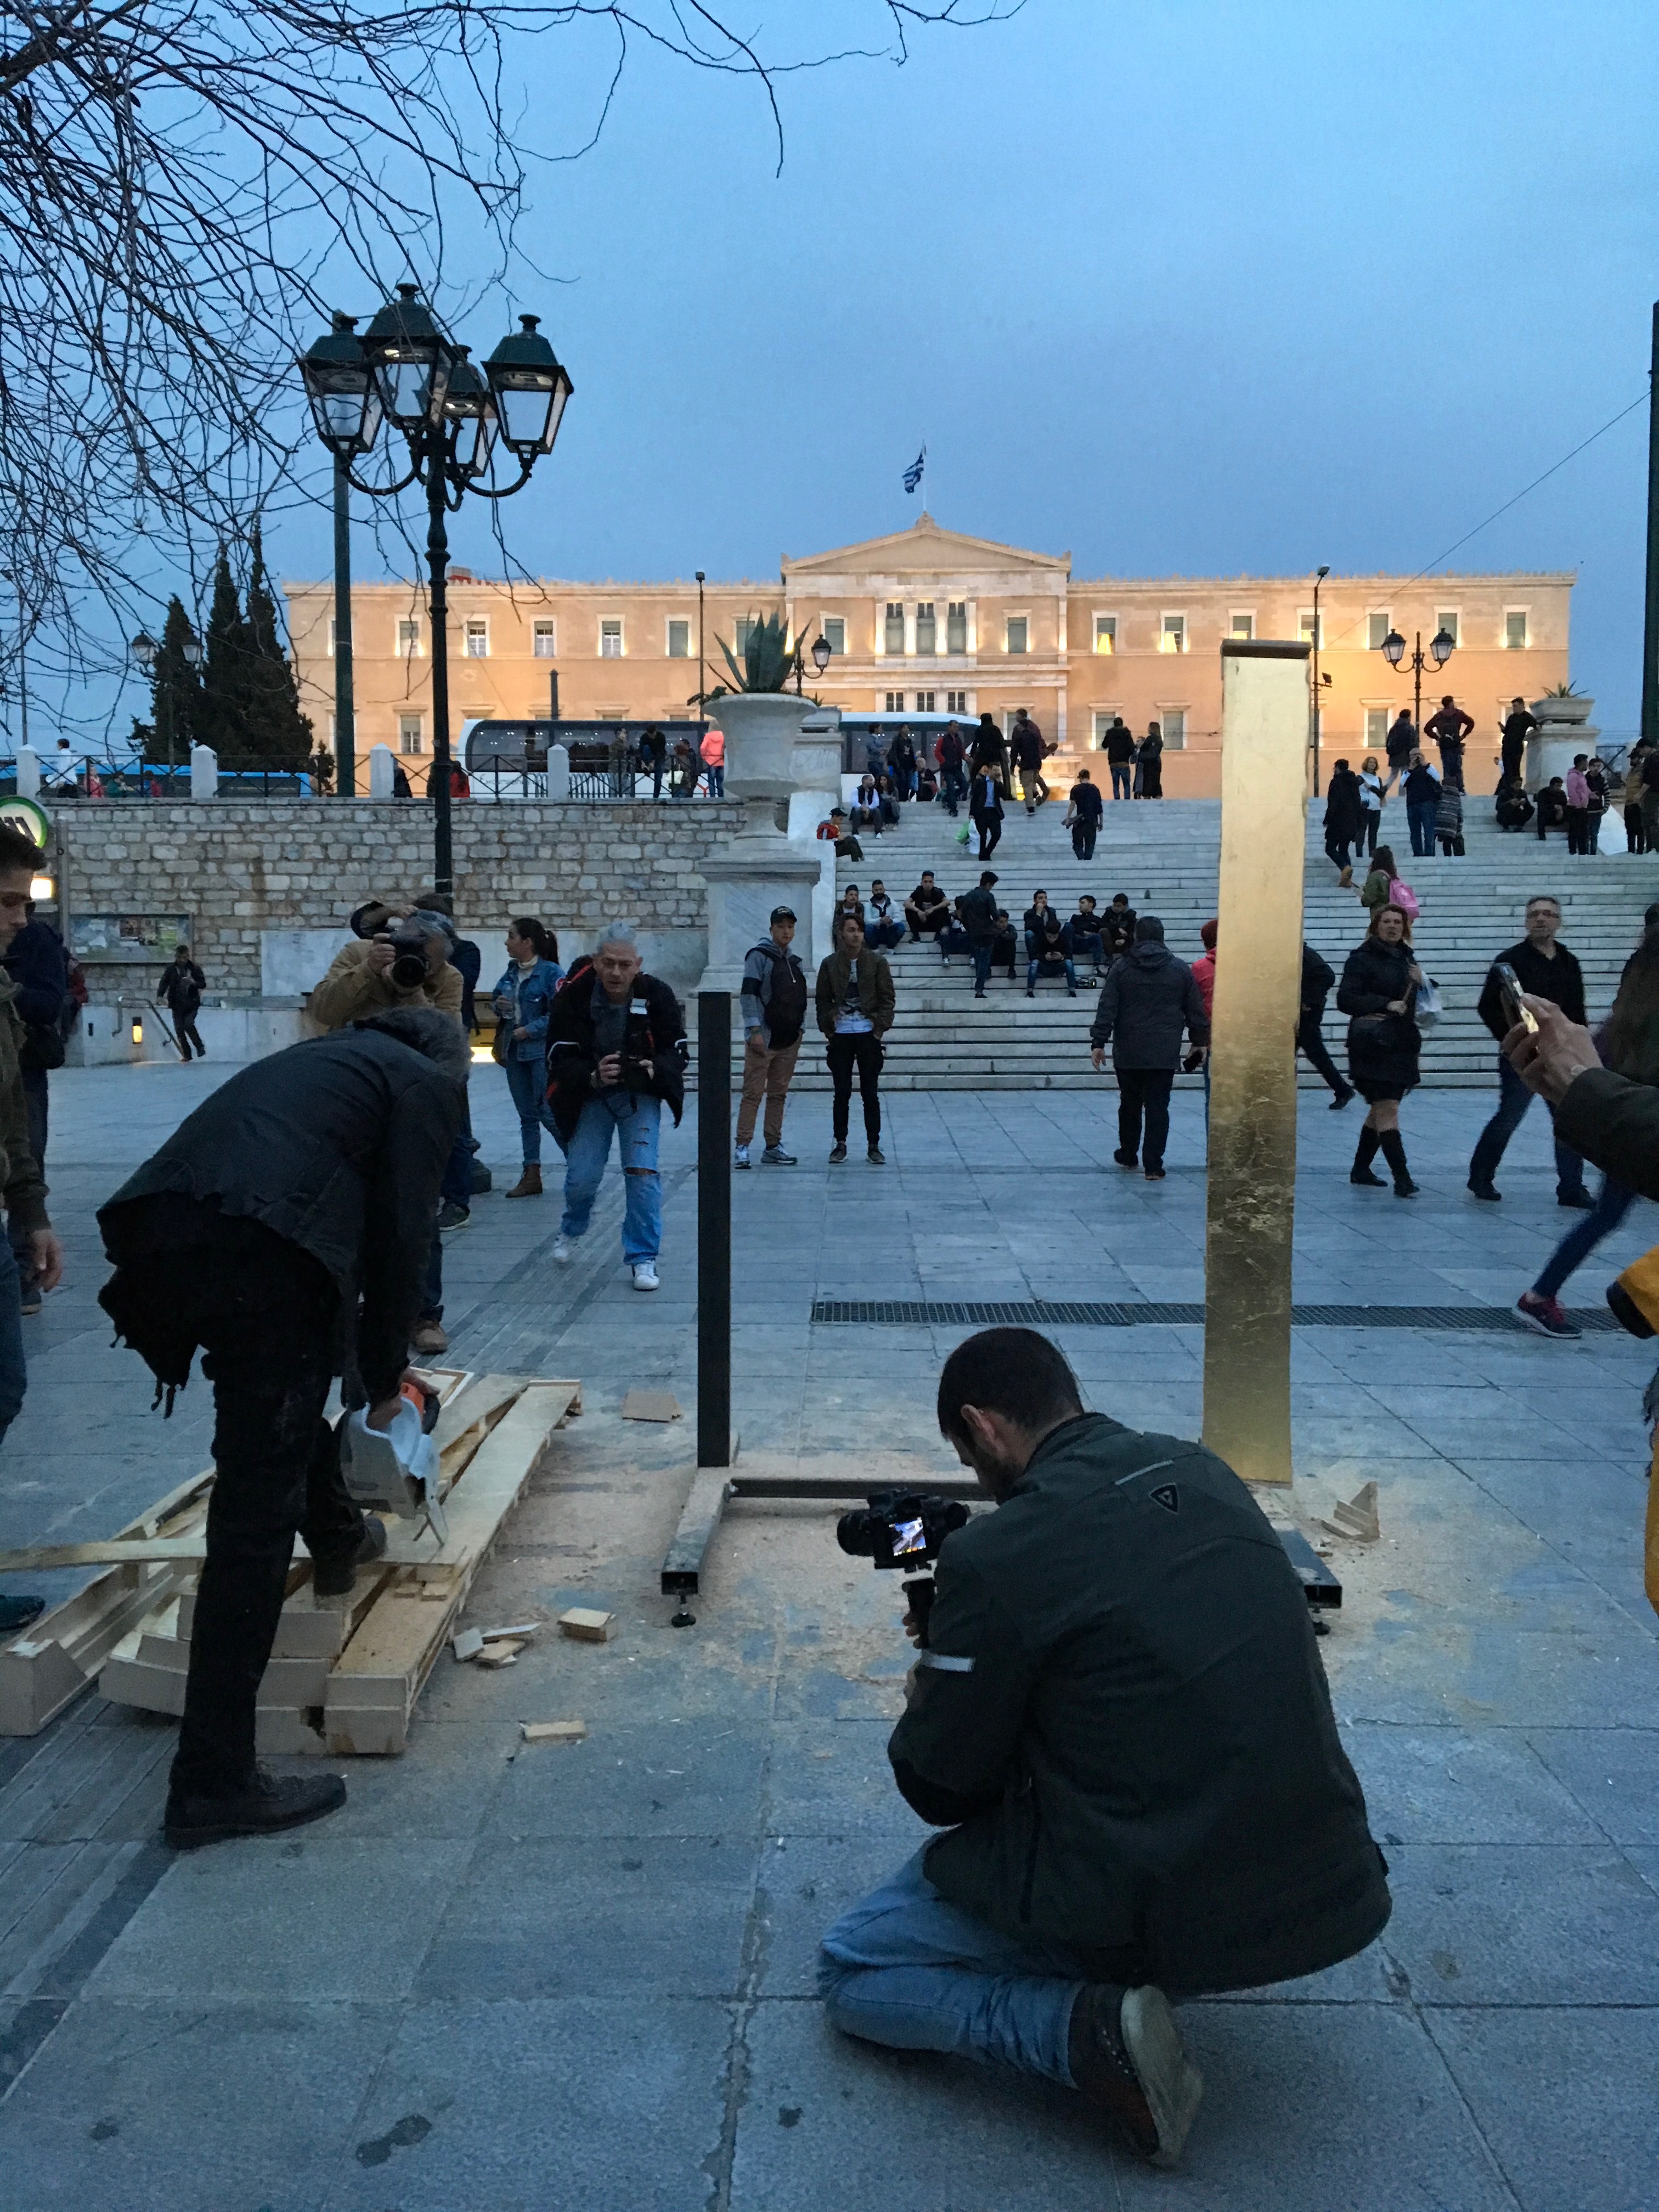 Kunstaktionen: Muthesius zersägt golden field auf dem Syntagma Platz